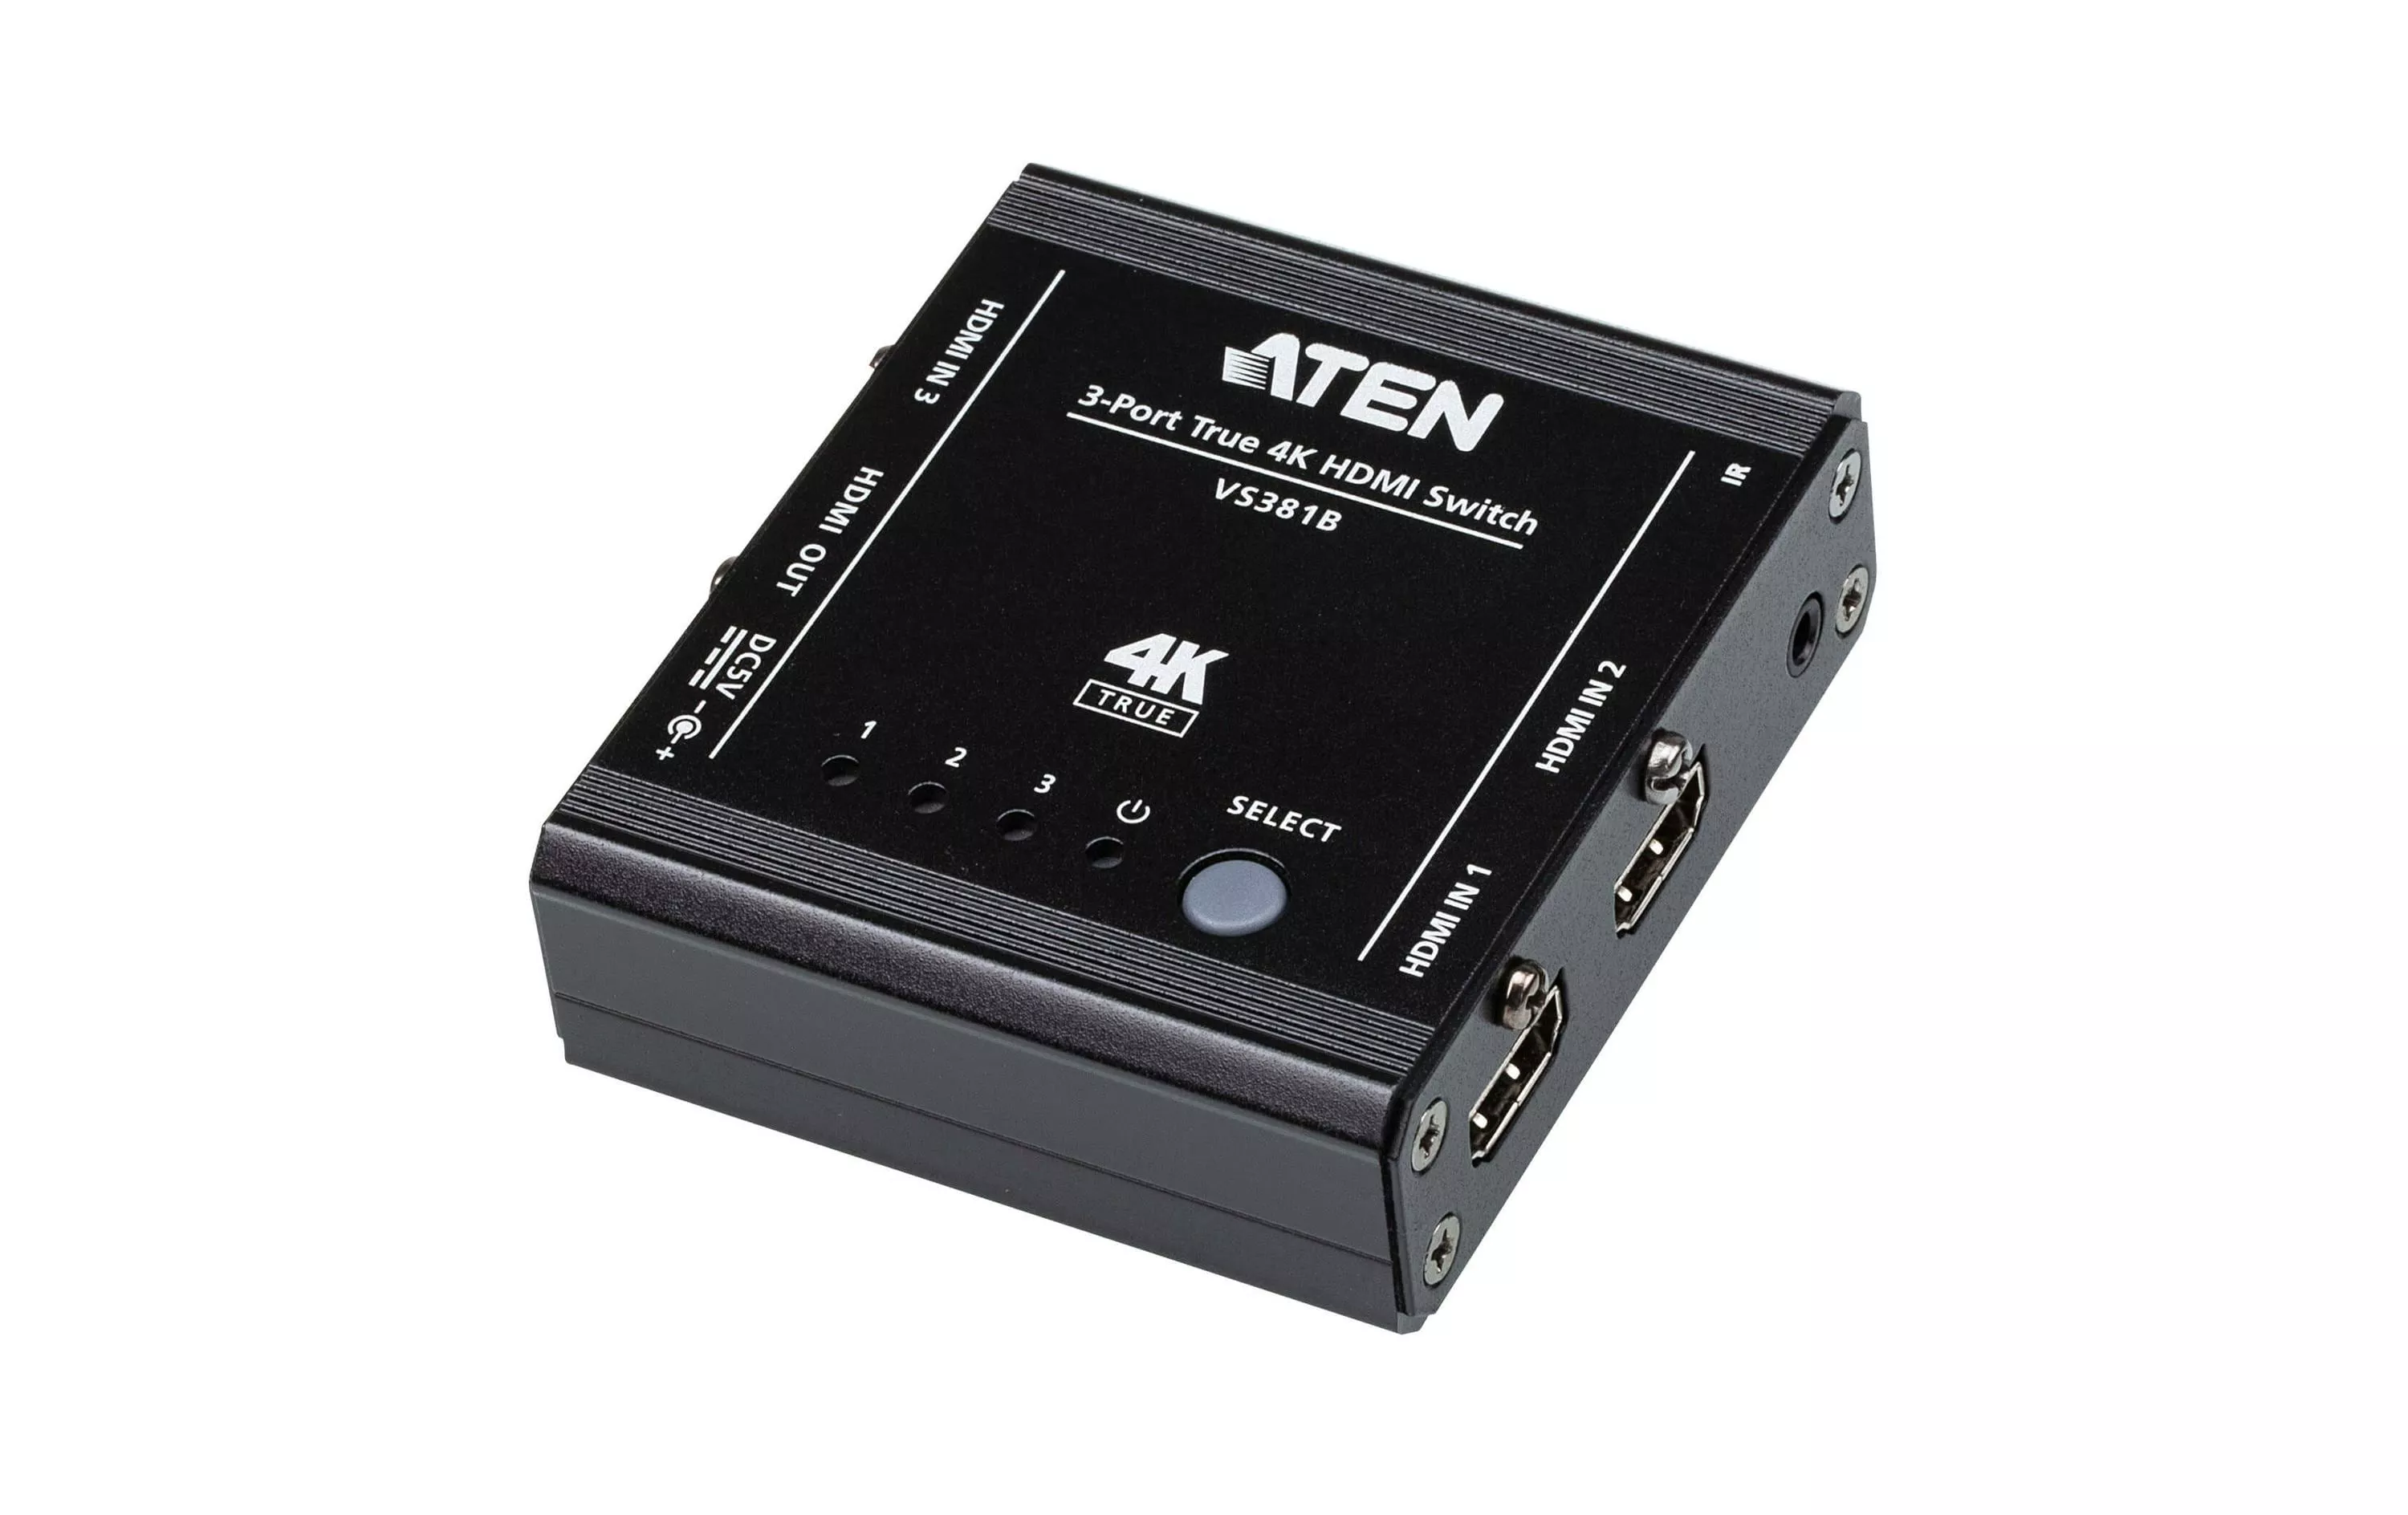 Interruttore HDMI Aten VS381B